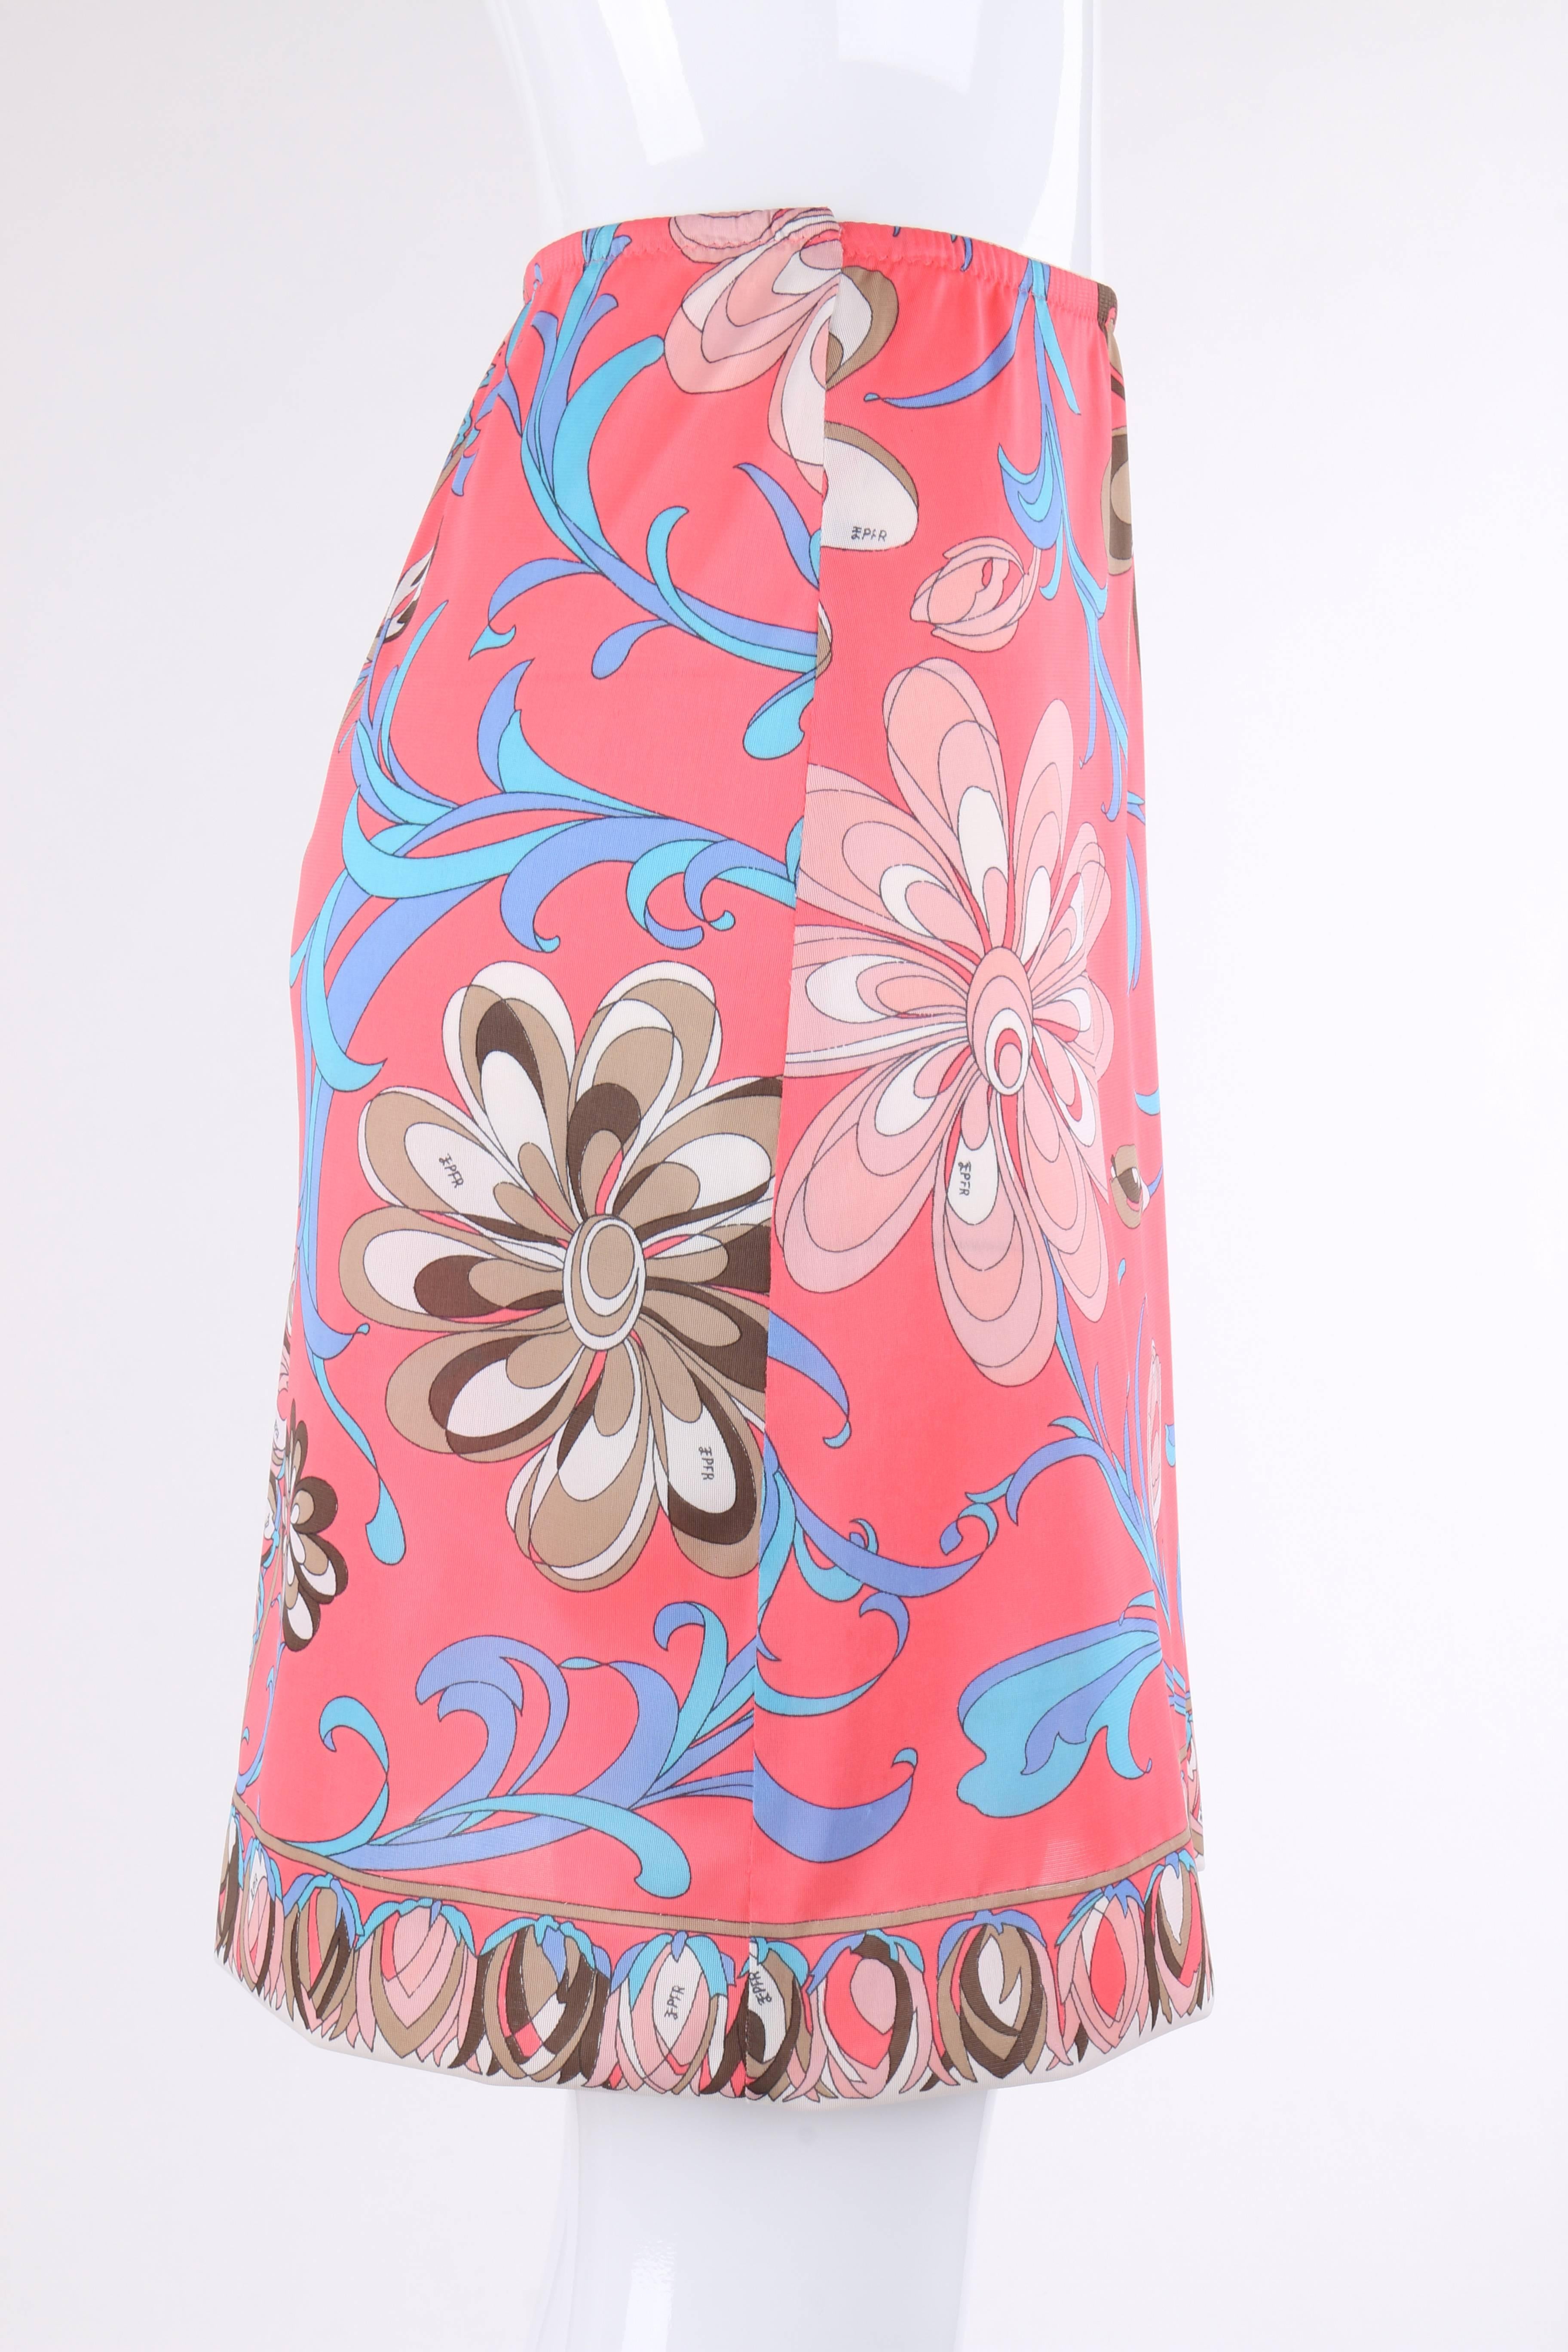 EMILIO PUCCI c.1960's Formfit Rogers Pink Multicolor Floral Print Slip ...